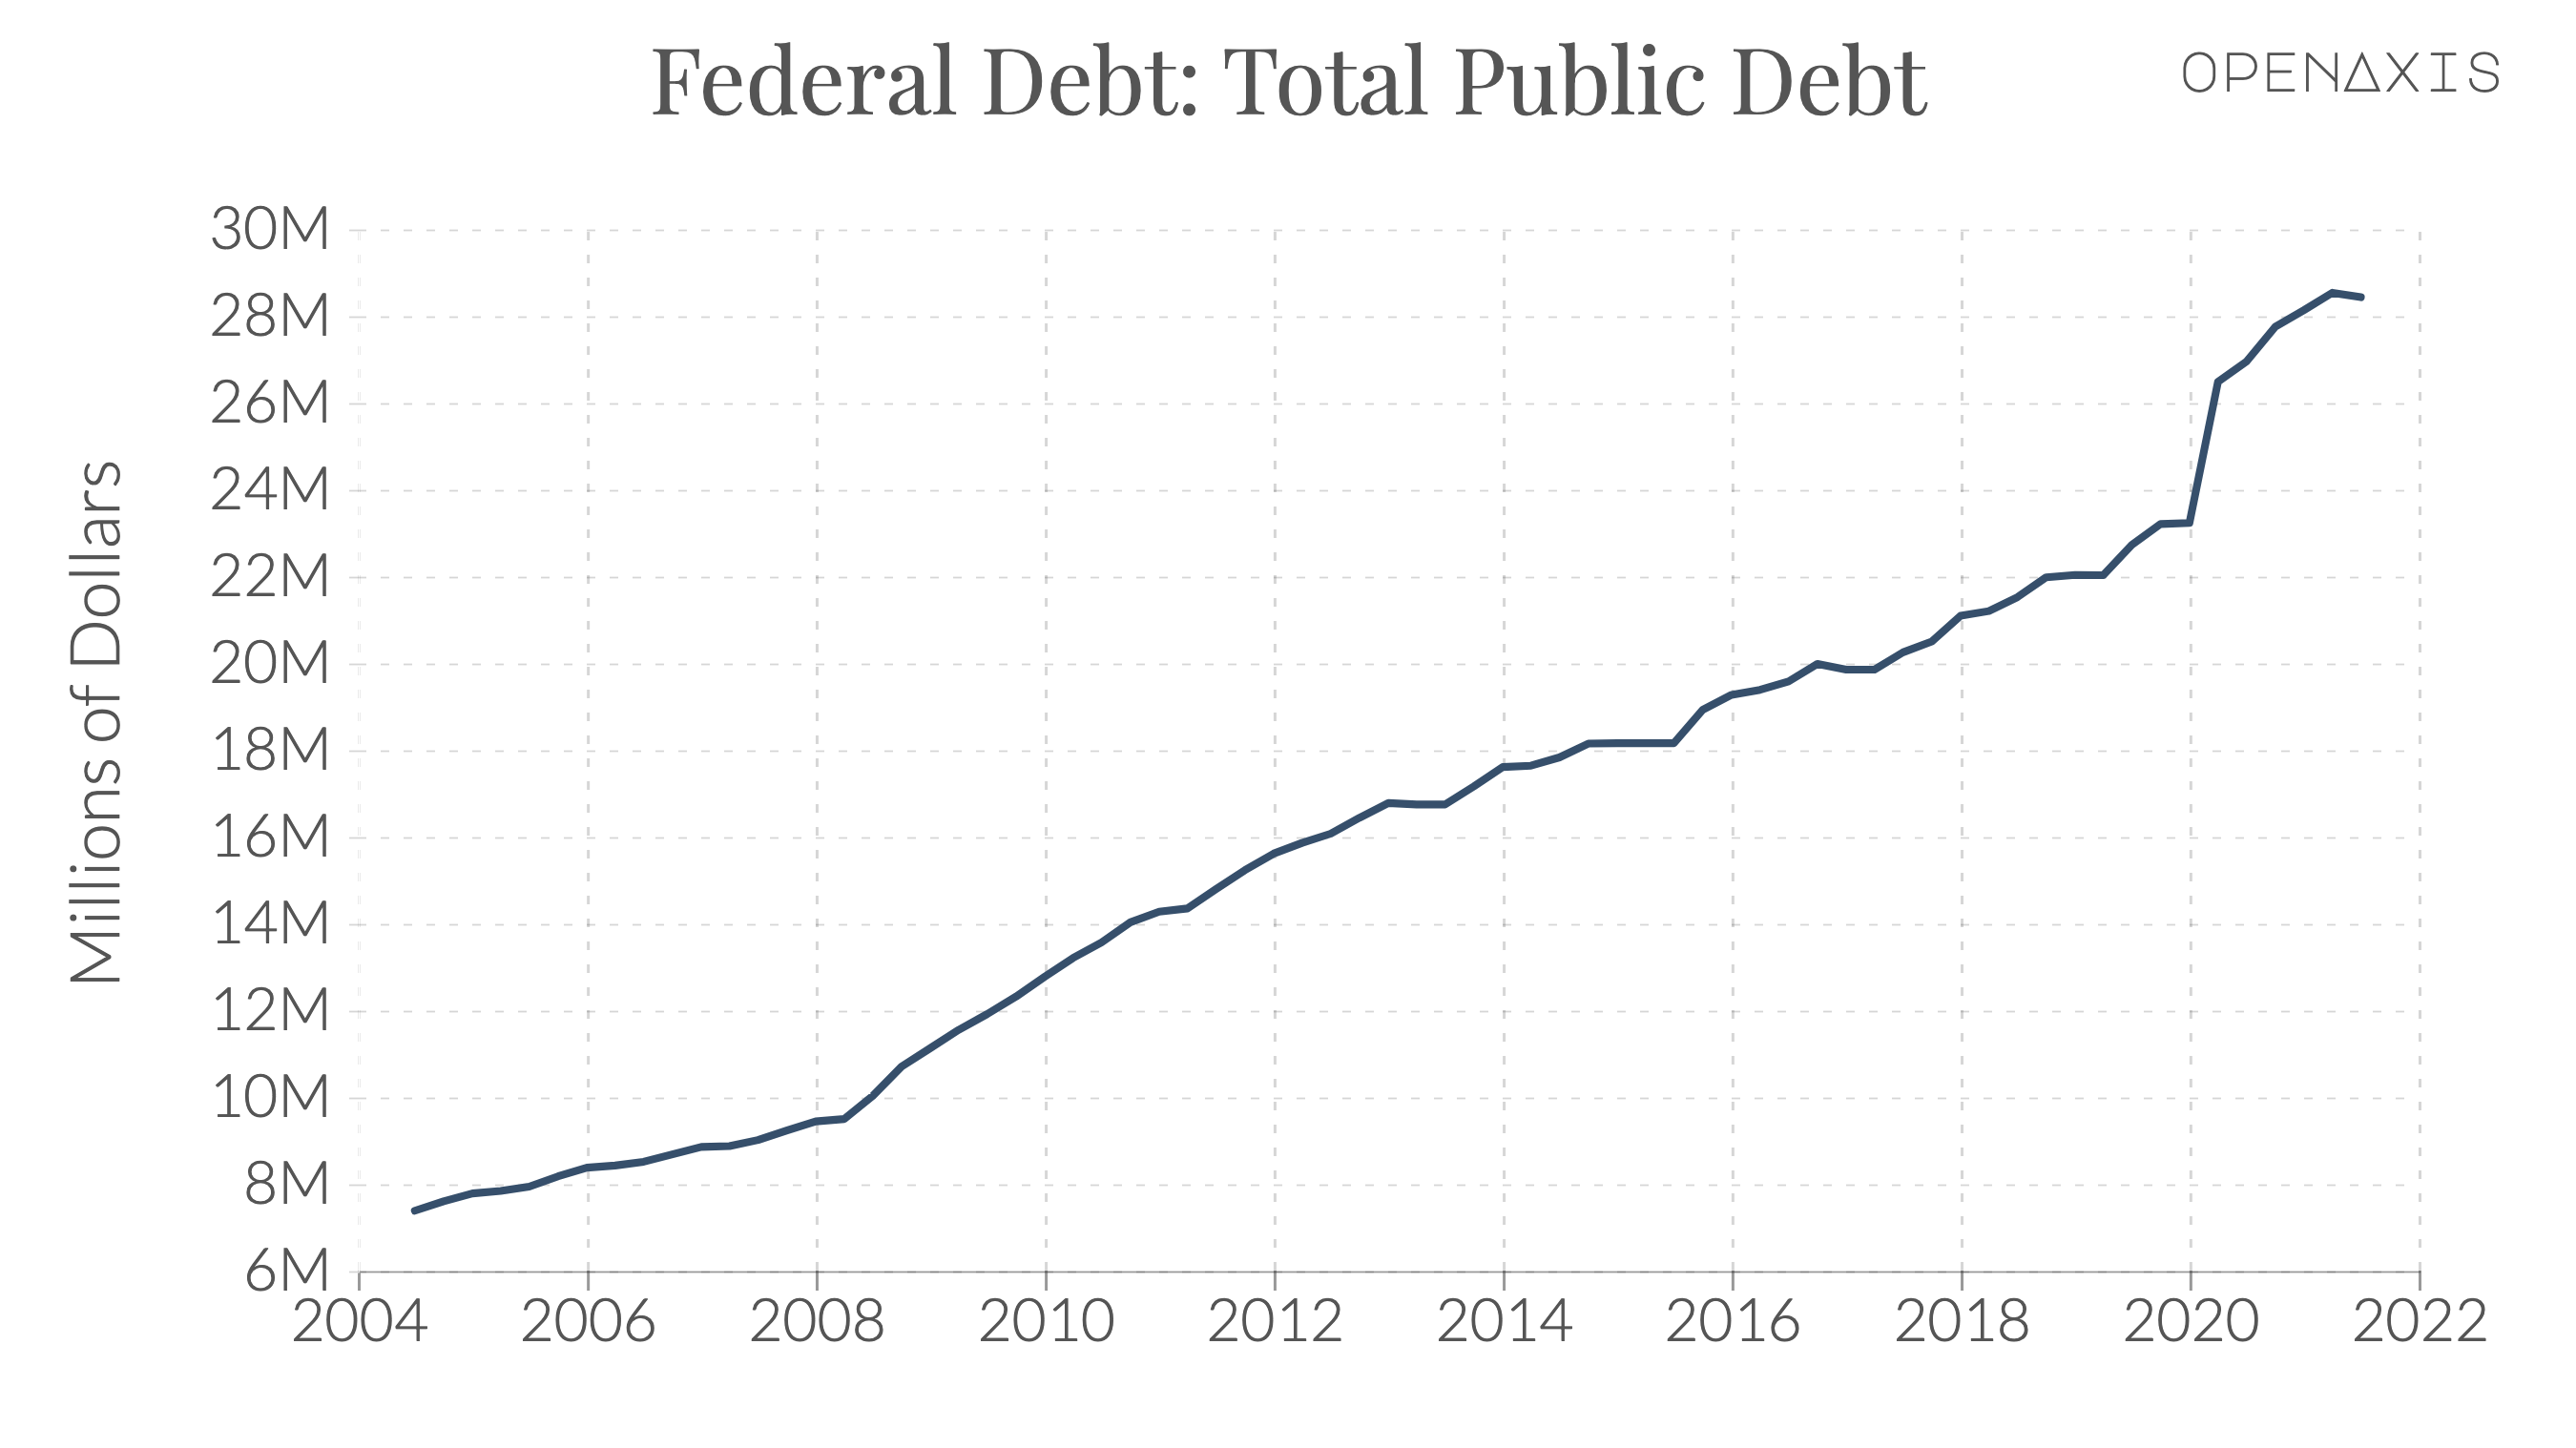 "Federal Debt: Total Public Debt"